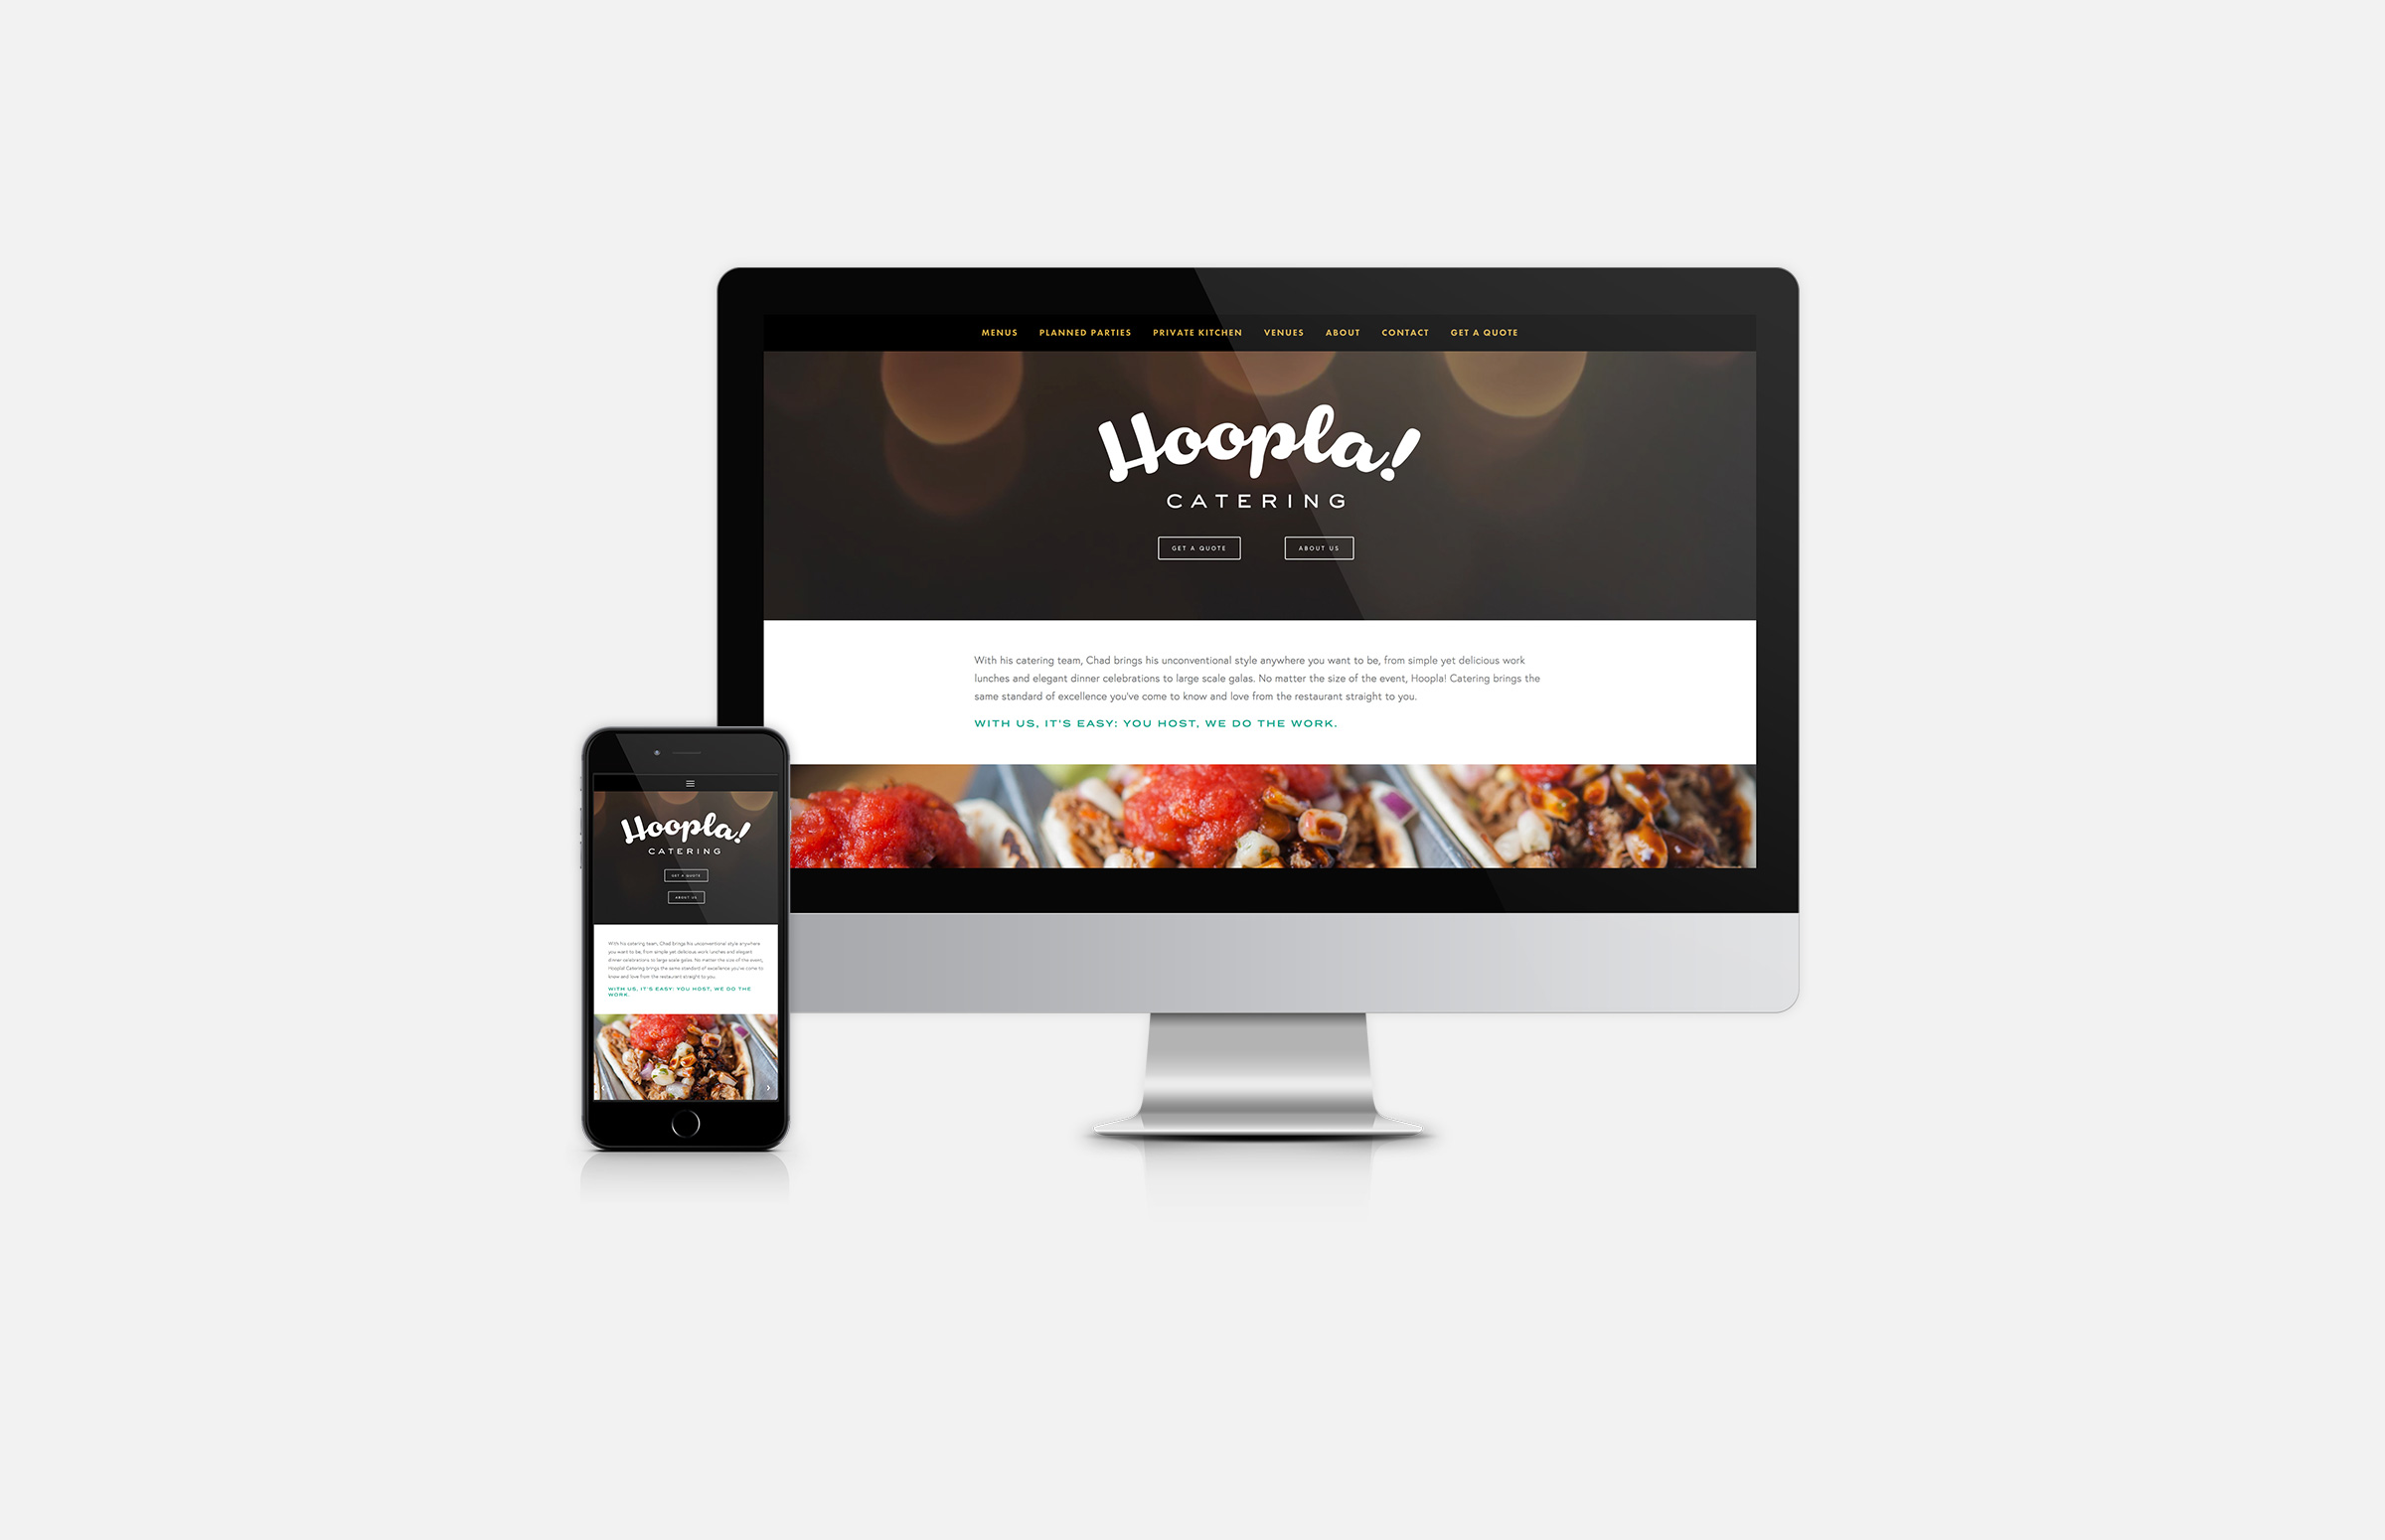 Hoopla! Catering: Responsive Website Design